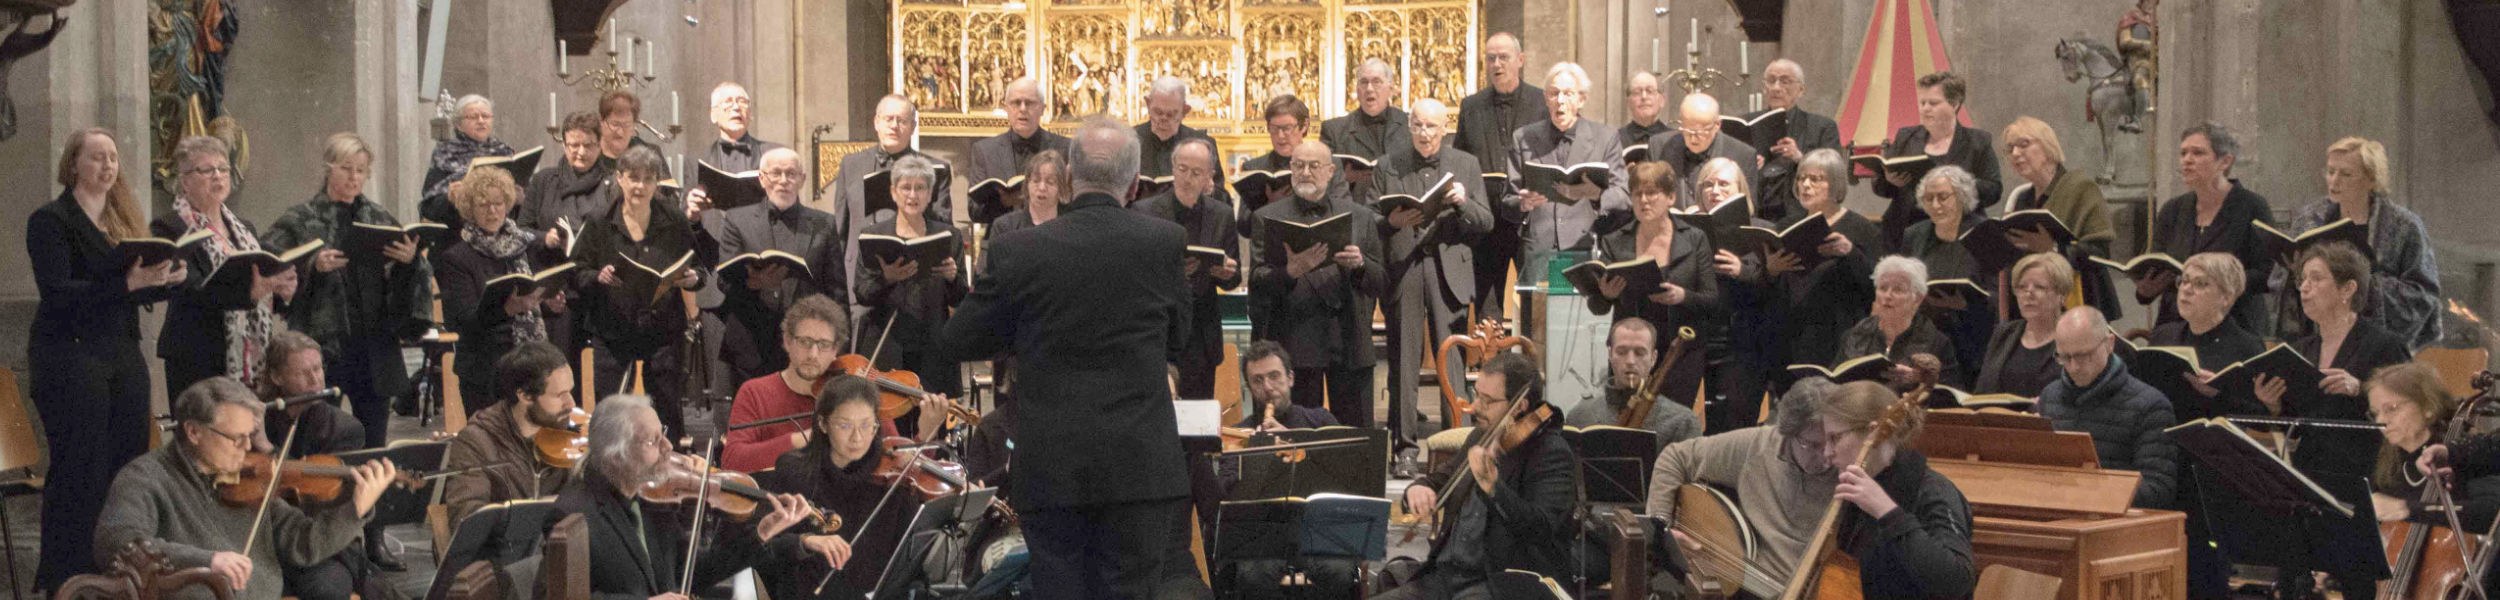 Recensies n.a.v. een uitvoering van the Messiah van G.F. Händel